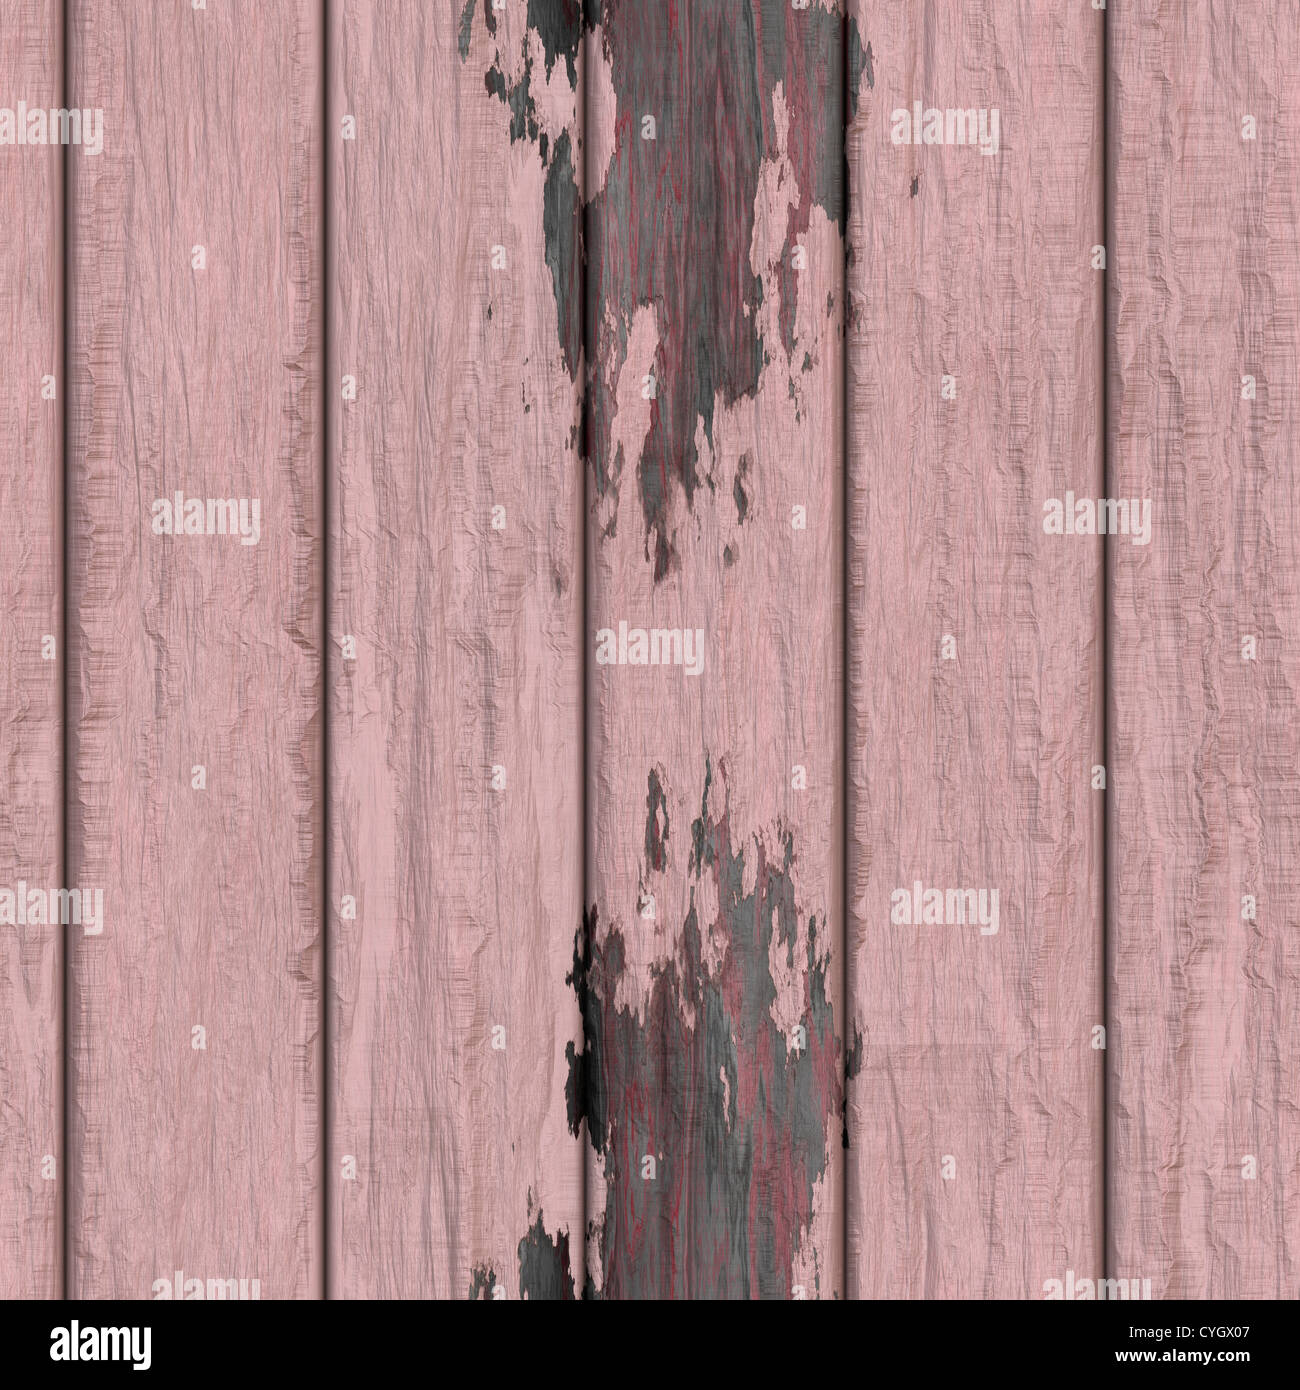 Nahtlose Qualität hohe Auflösung der alten hölzernen Planken Stockfoto